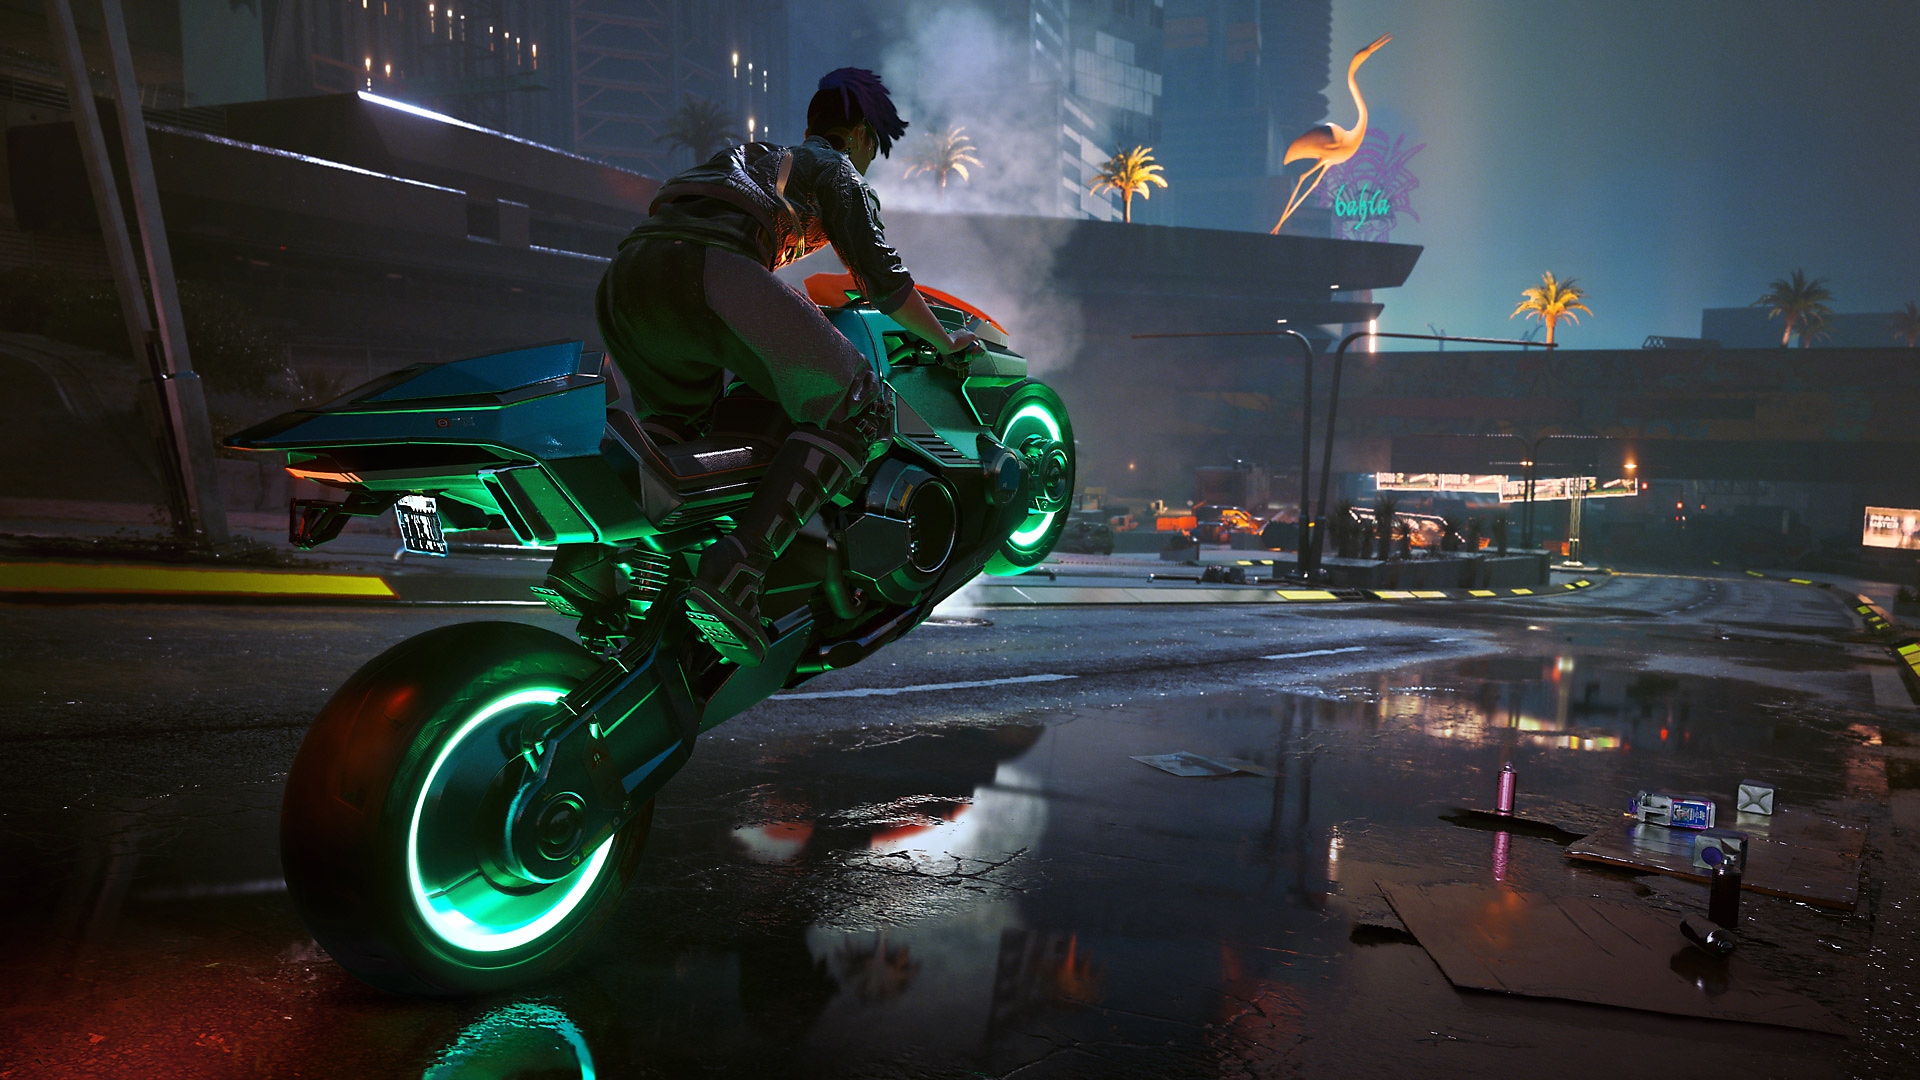 Cyberpunk 2077: Edgerunners-update met een personage die een wheelie maakt op een motorfiets met gloeiende, groene wielen